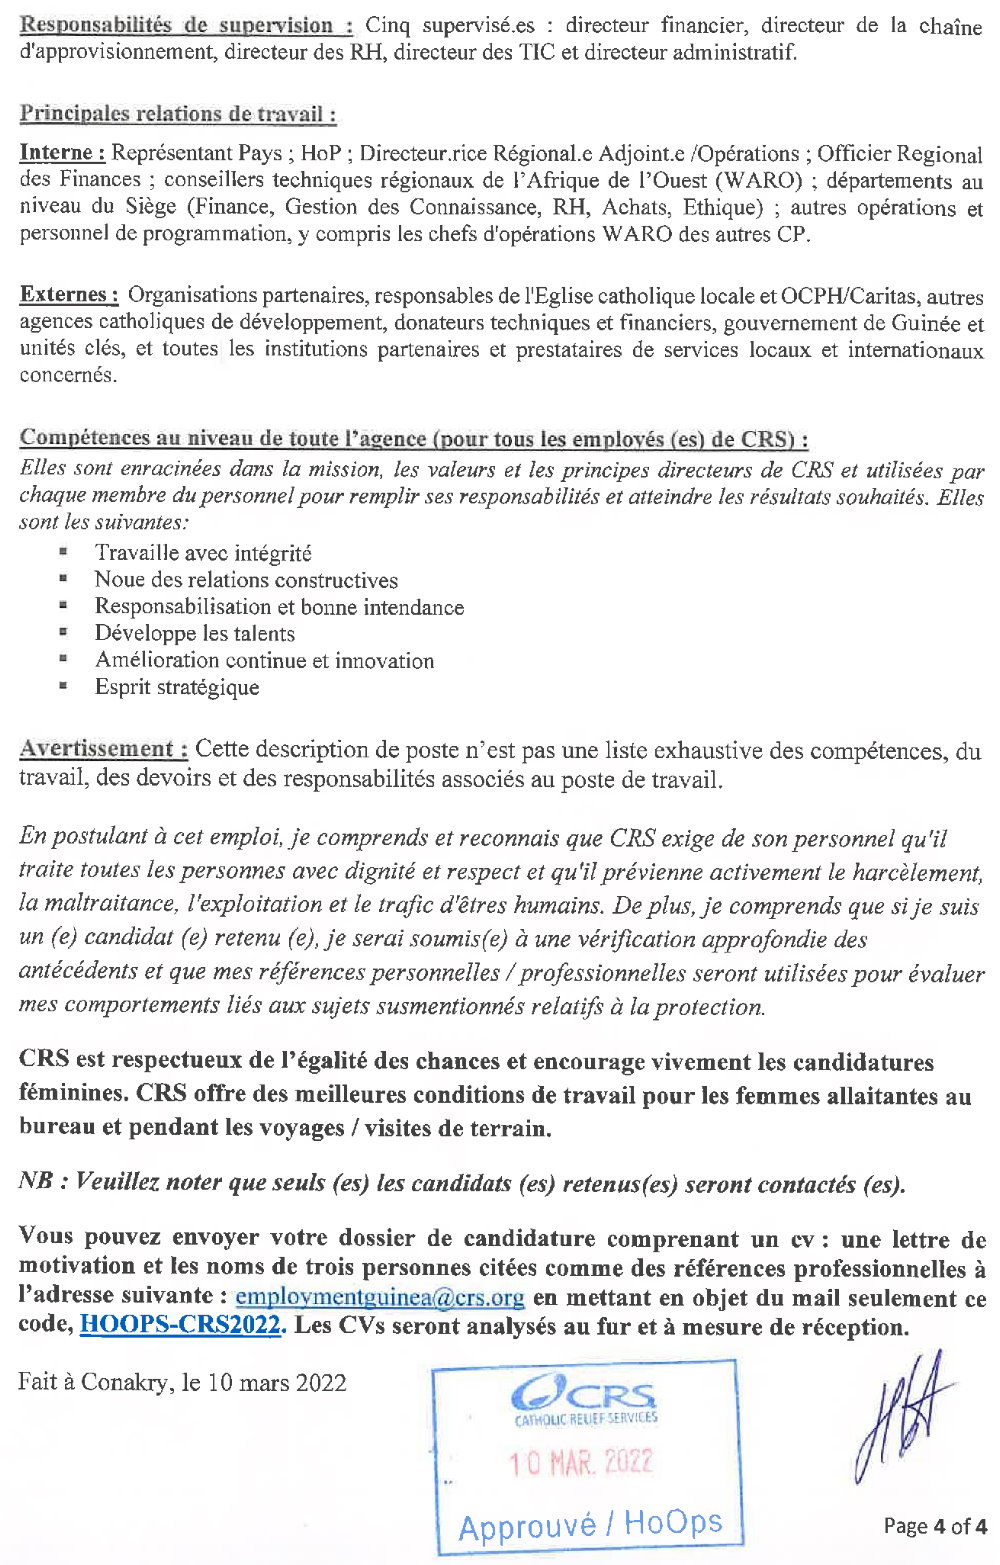 Appel à candidature pour le recrutement d’un(e) Directeur (trice) des Opérations pour CRS Guinée page 4 